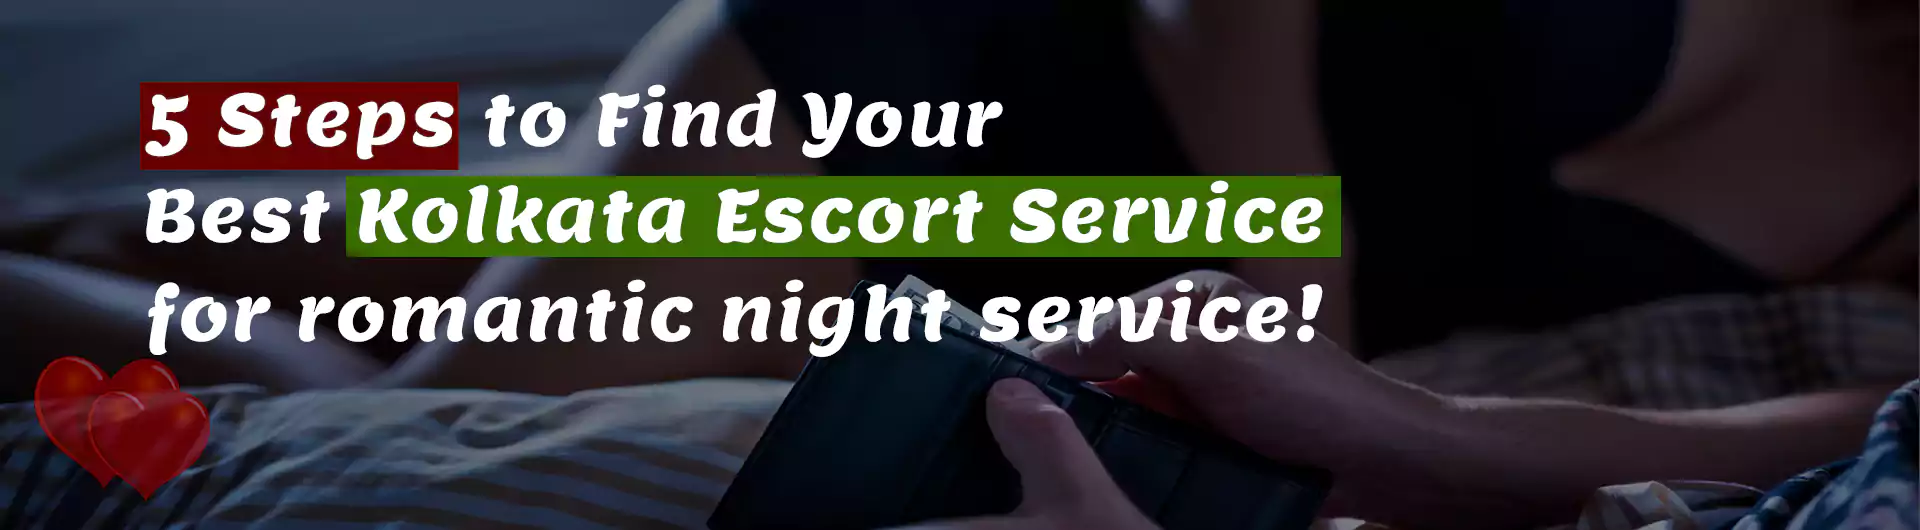 Find Your Best Kolkata Escort Service